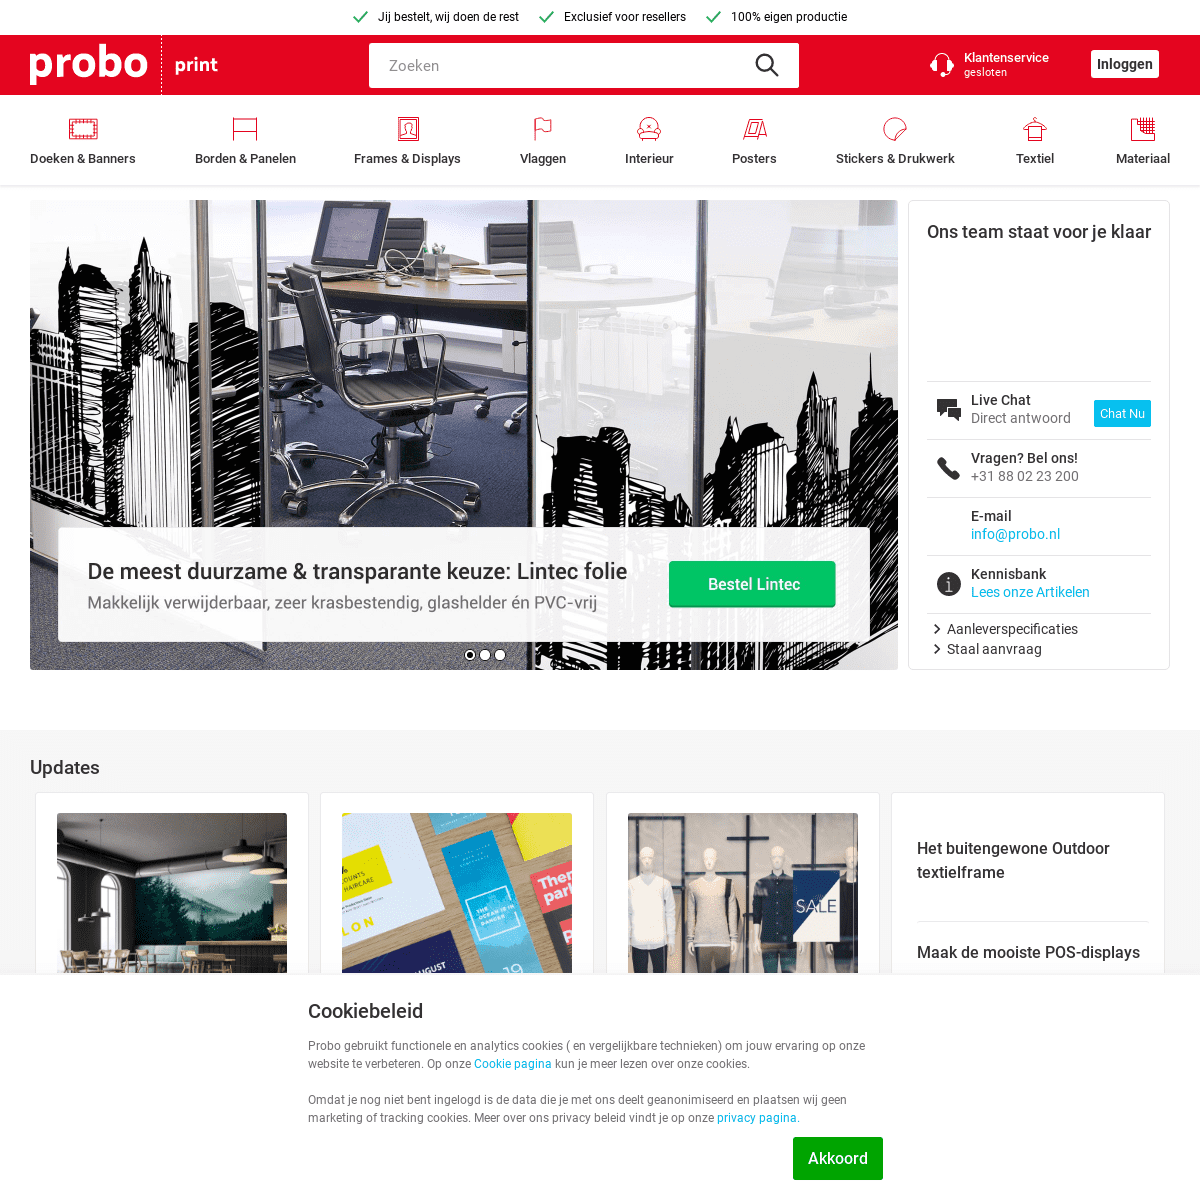 Probo.nl - Digitale print & fulfilment partner voor resellers - Probo